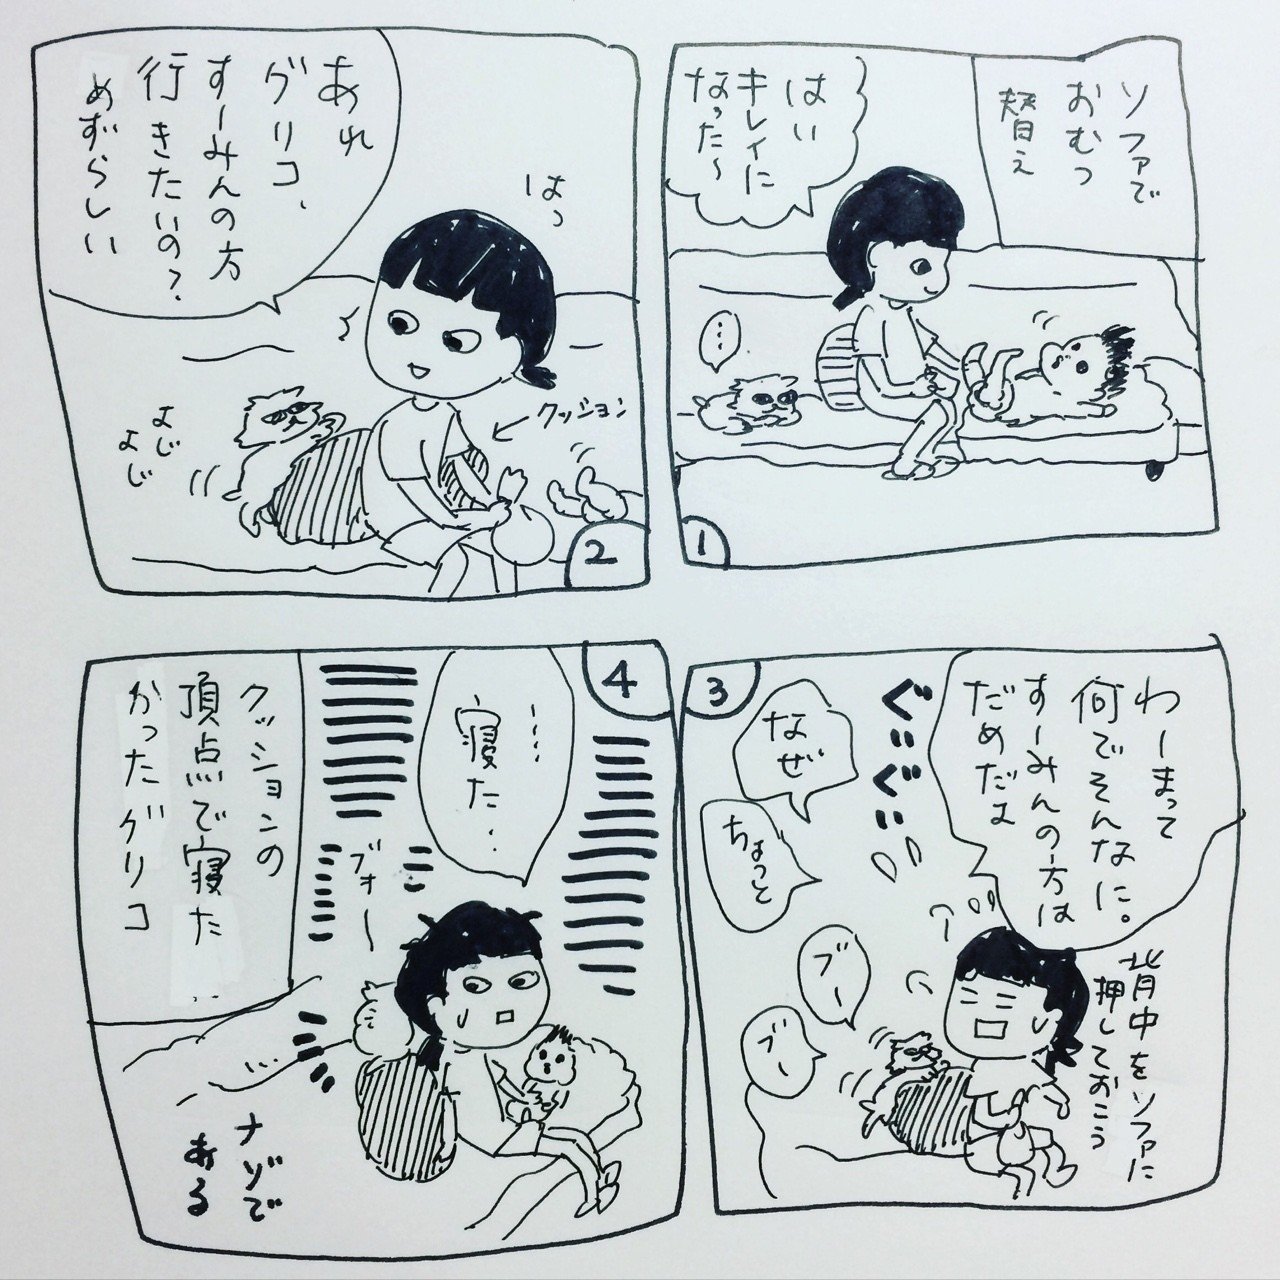 じゅんこ漫画シリーズ グリコ編 ジュンジュンジュン Note